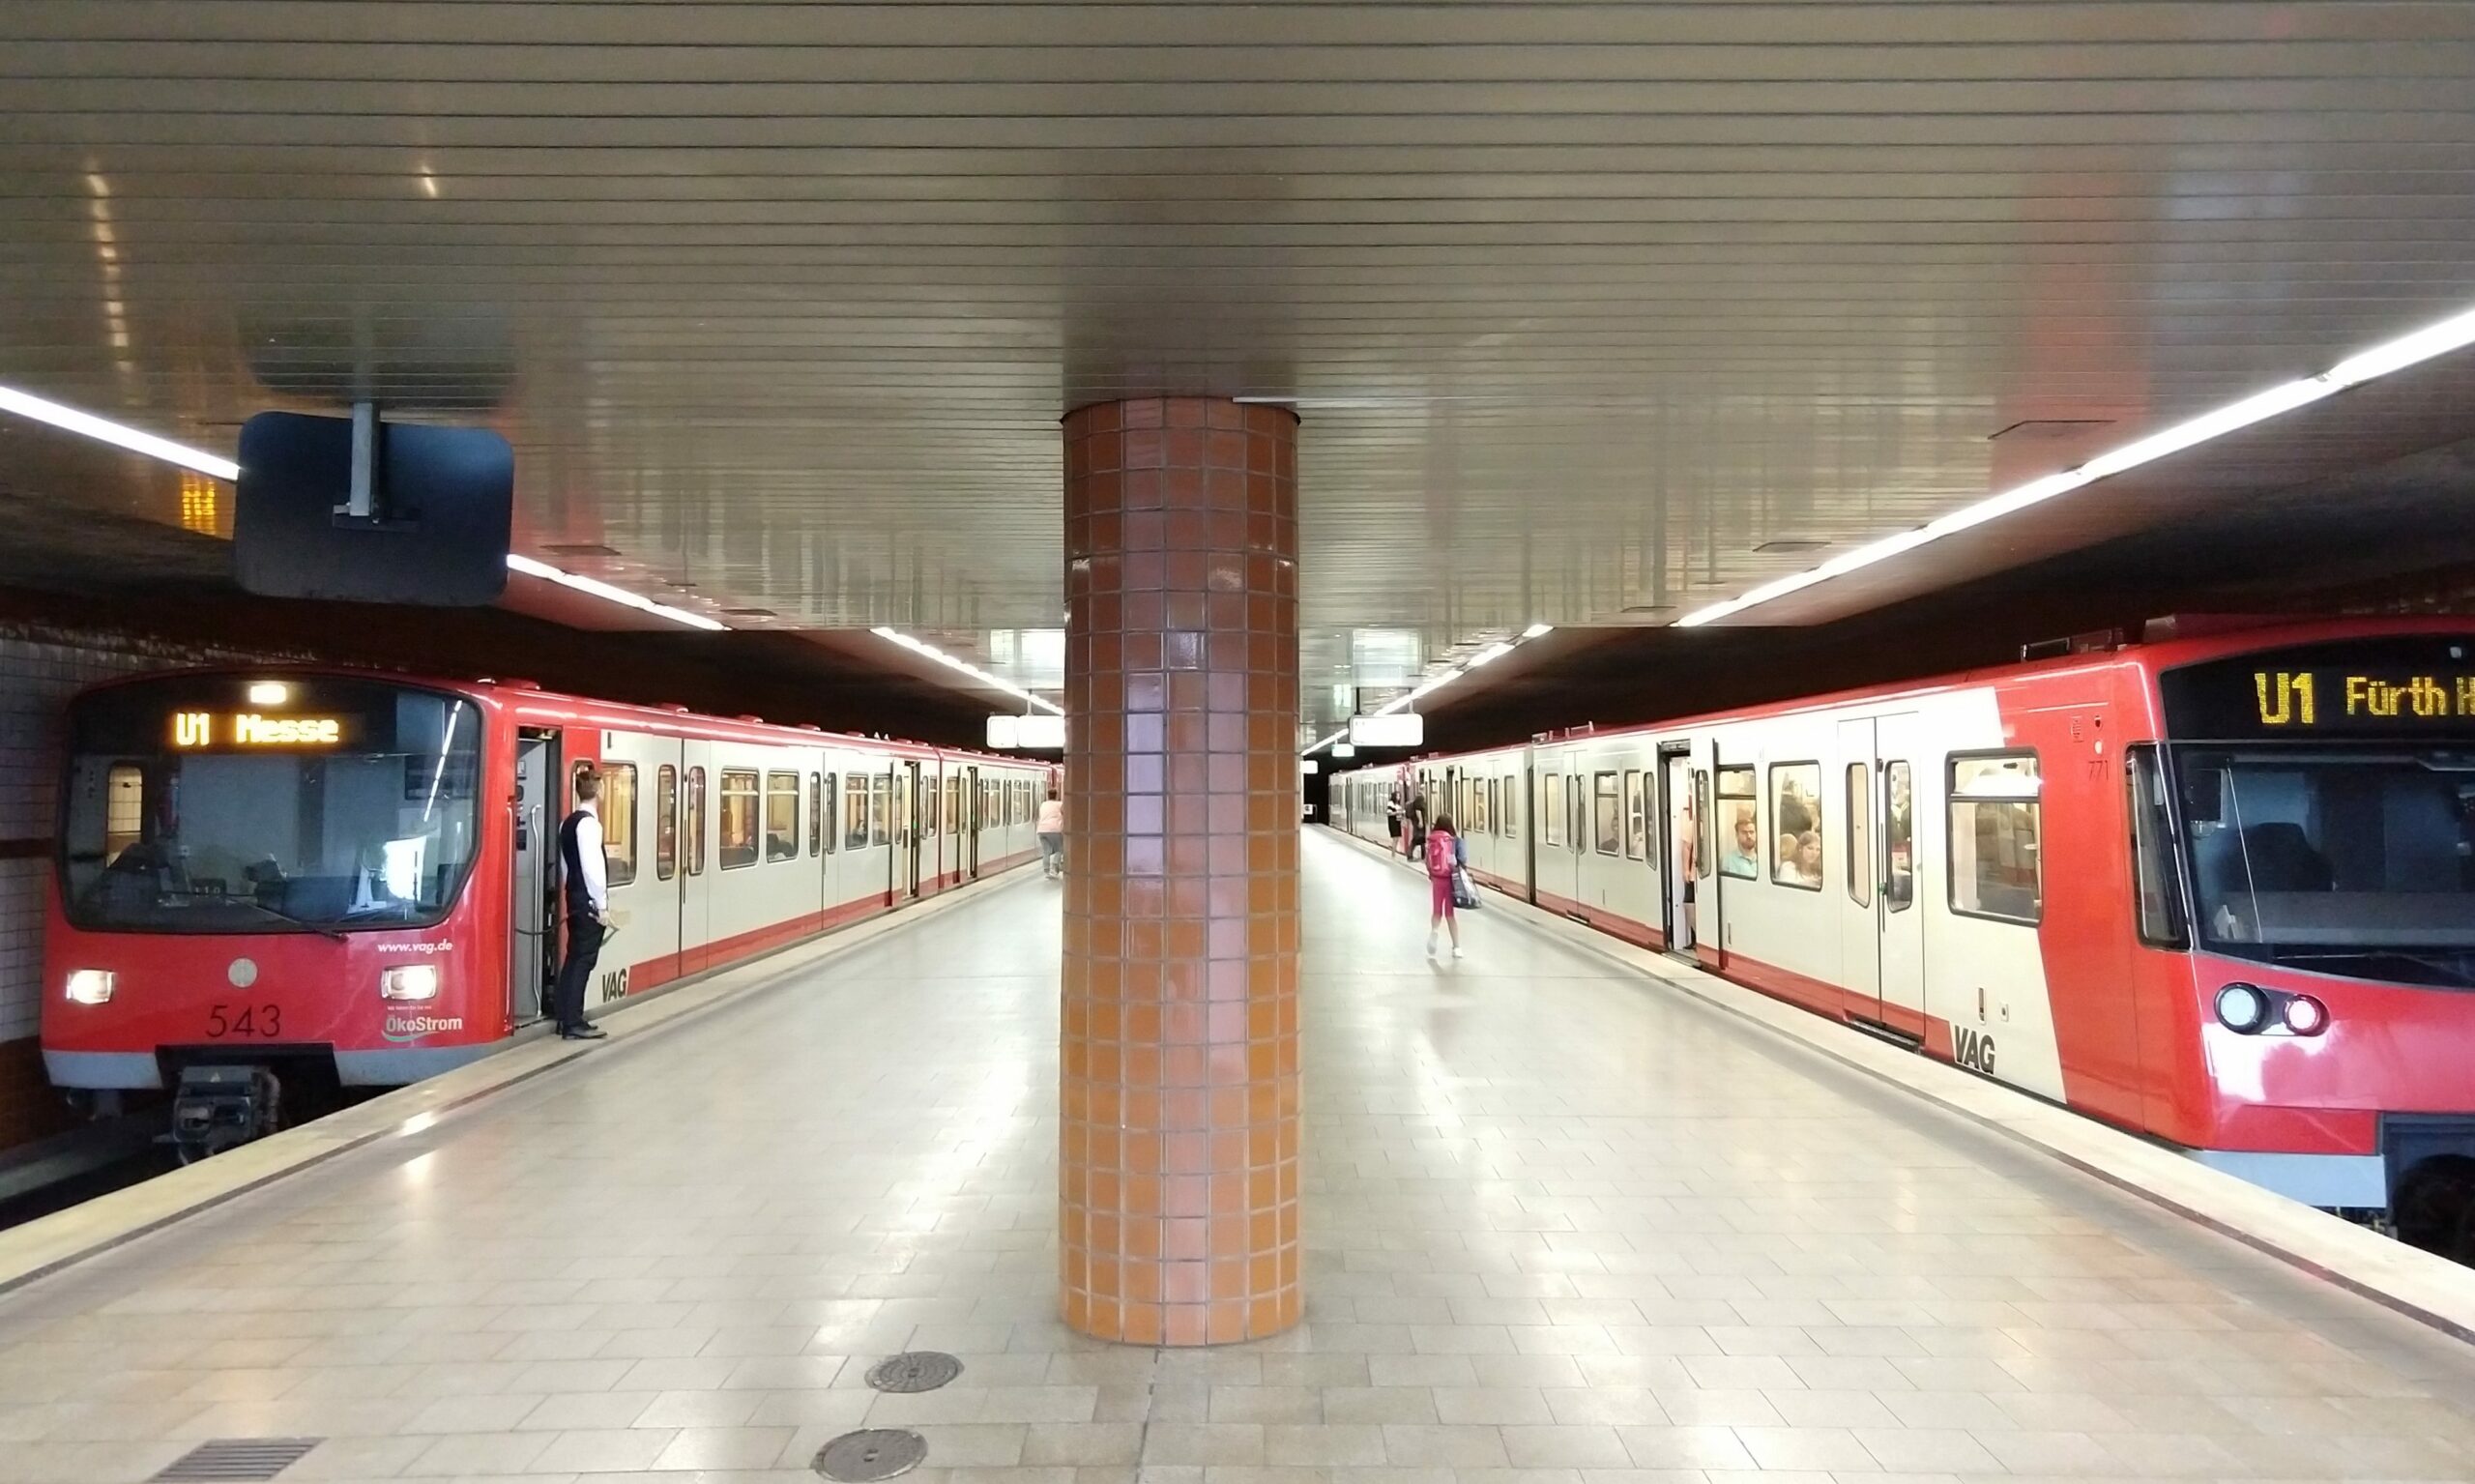 U-Bahnhof Hasenbuck, Symbolbild aus dem Jahr 2017